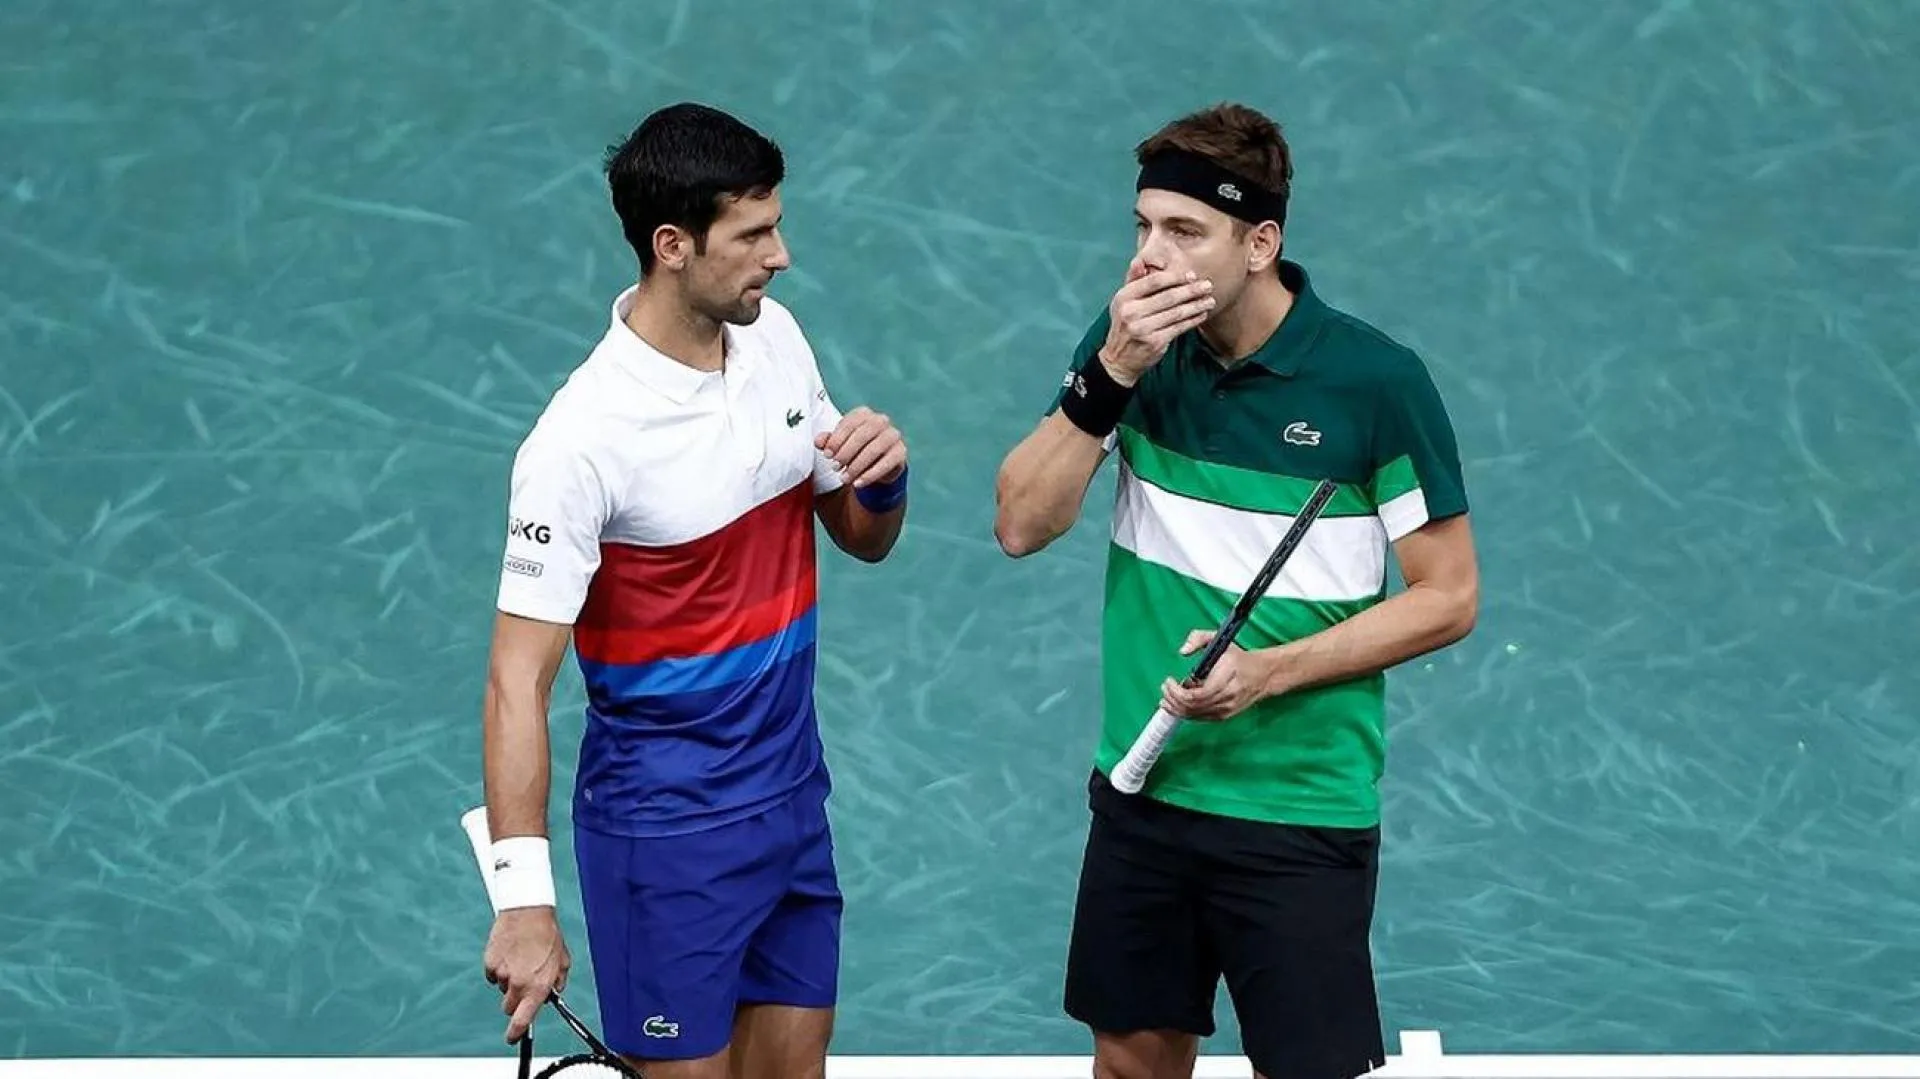 Paris Masters 2021: Tsitsipas bất ngờ dừng bước - Djokovic bị loại ở nội dung đôi nam